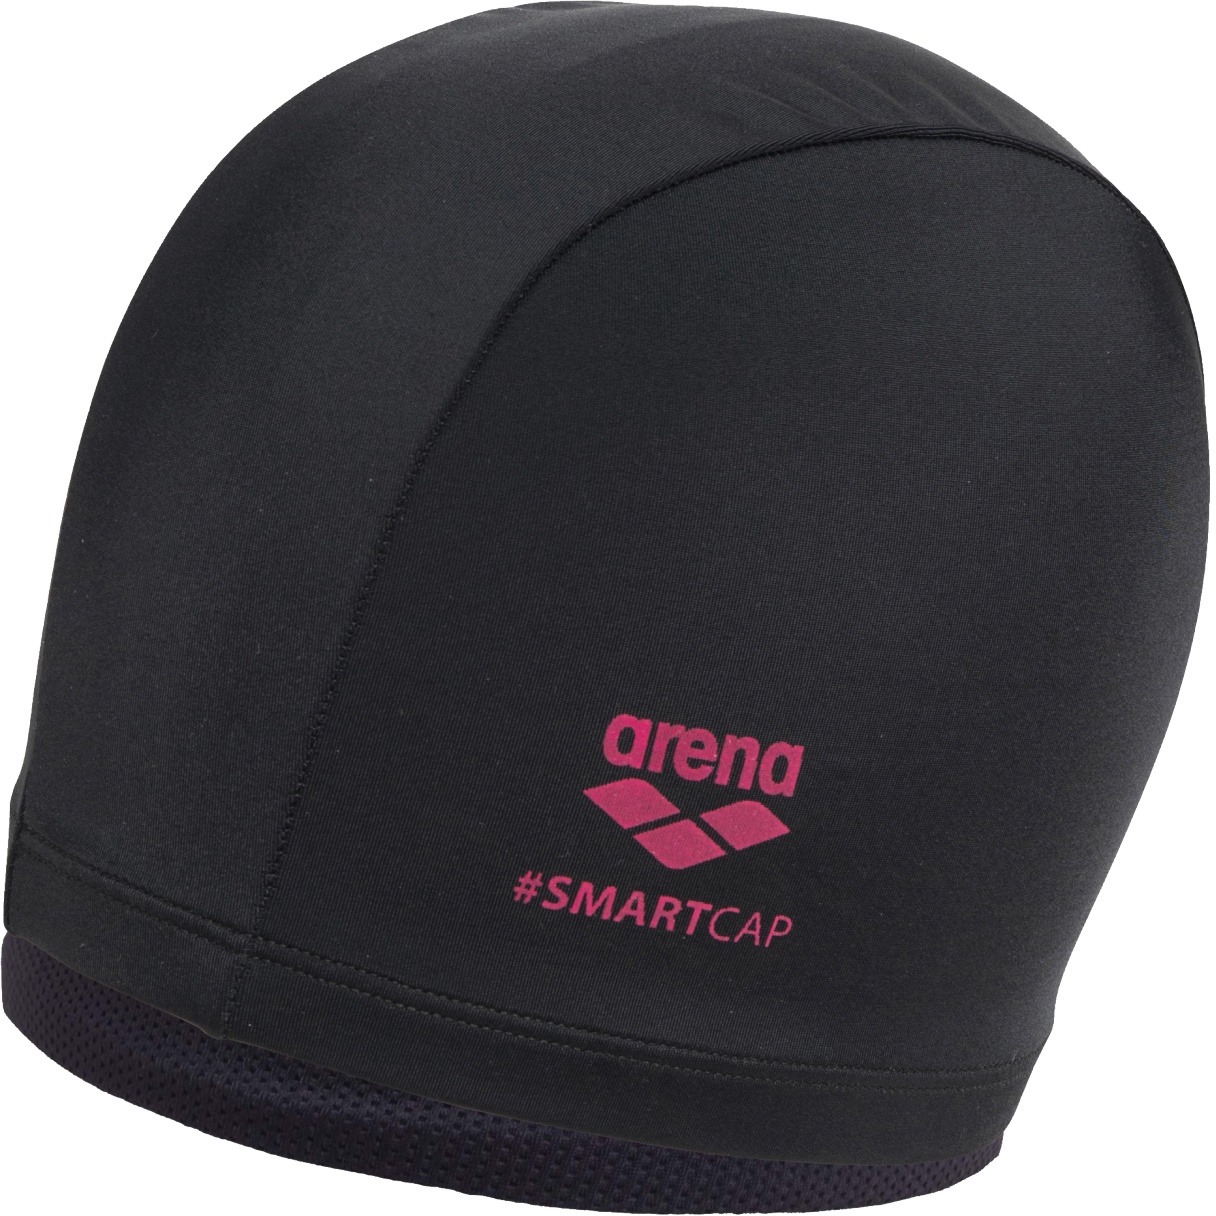 Produktbild von arena Smartcap Schwimmkappe - Schwarz